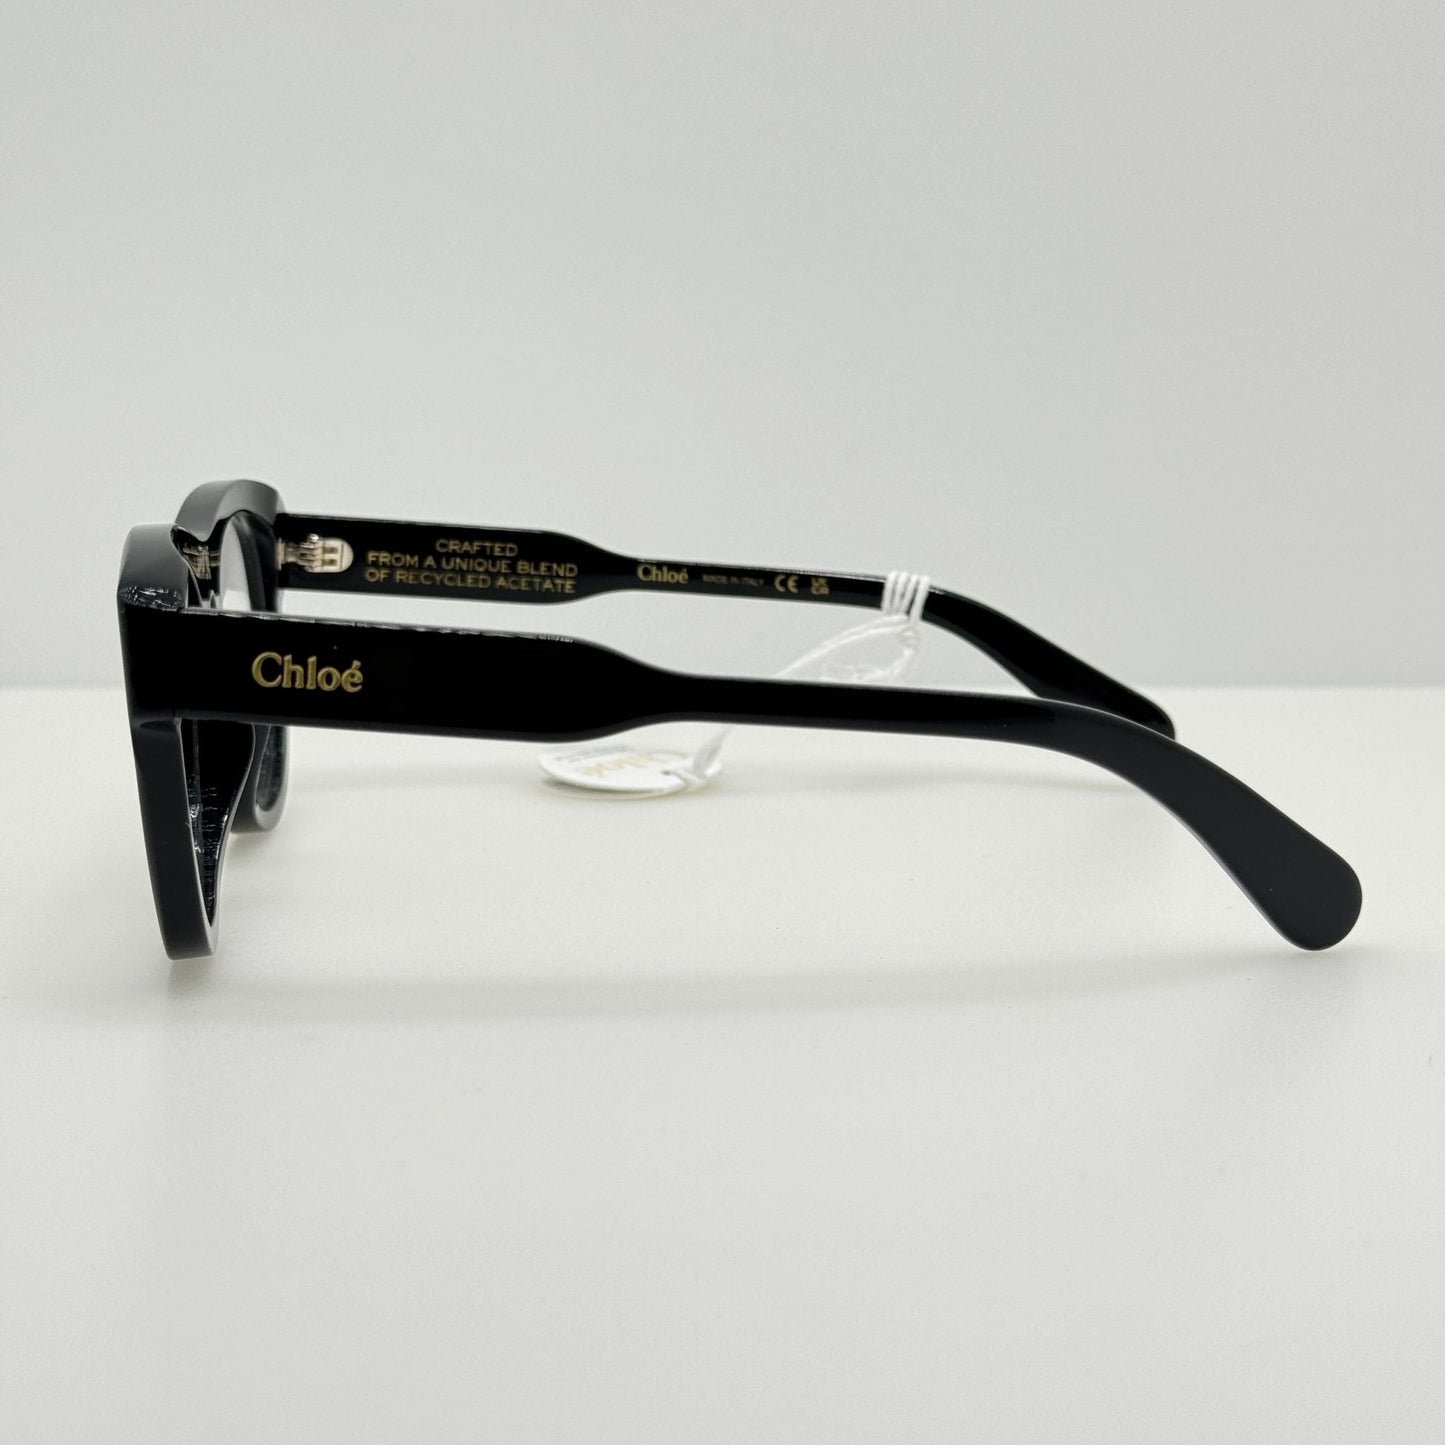 Chloe Eyeglasses Eye Glasses Frames CH0152O 001 53-17-145 Italy